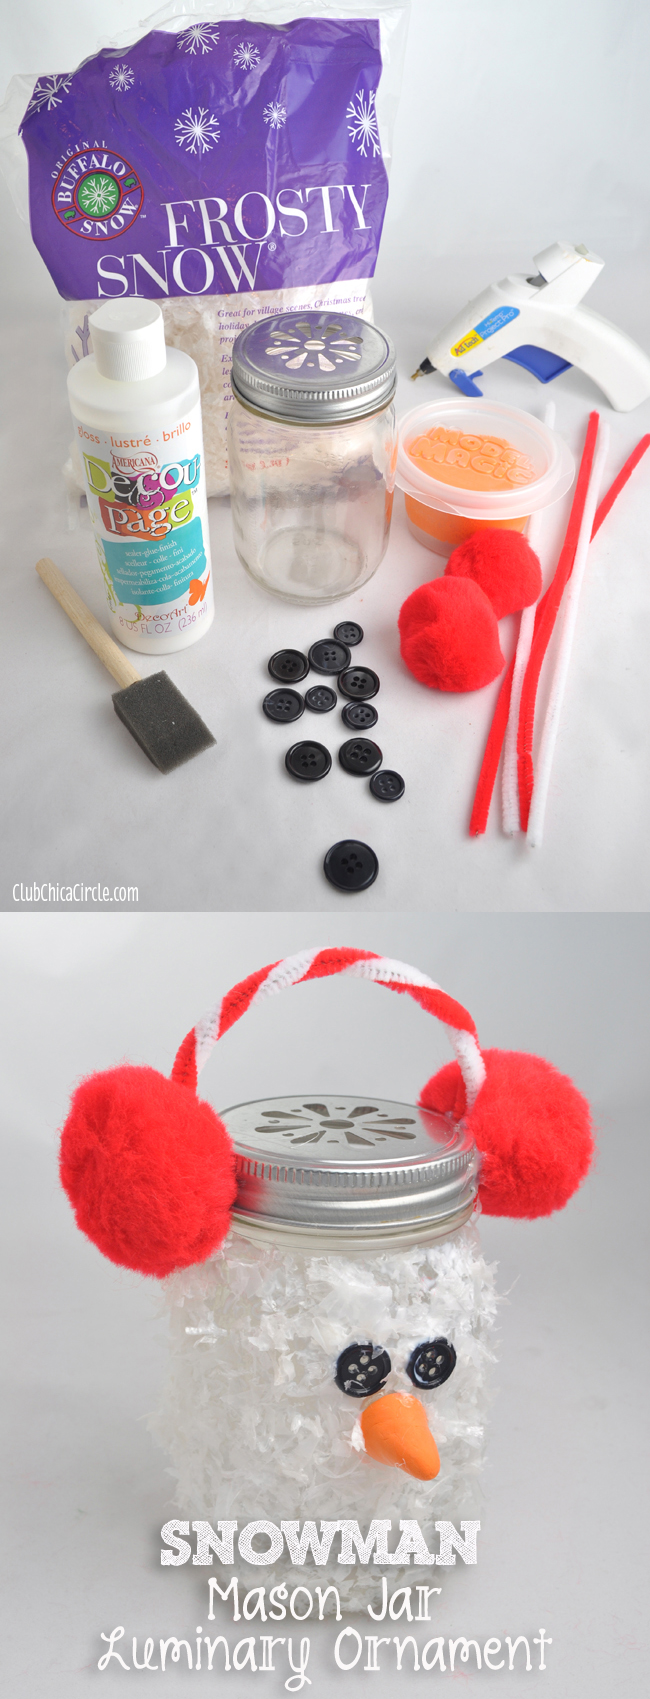 Snowman Mason Jar Luminary Ornament | 25+ snowman crafts and fun food ideas